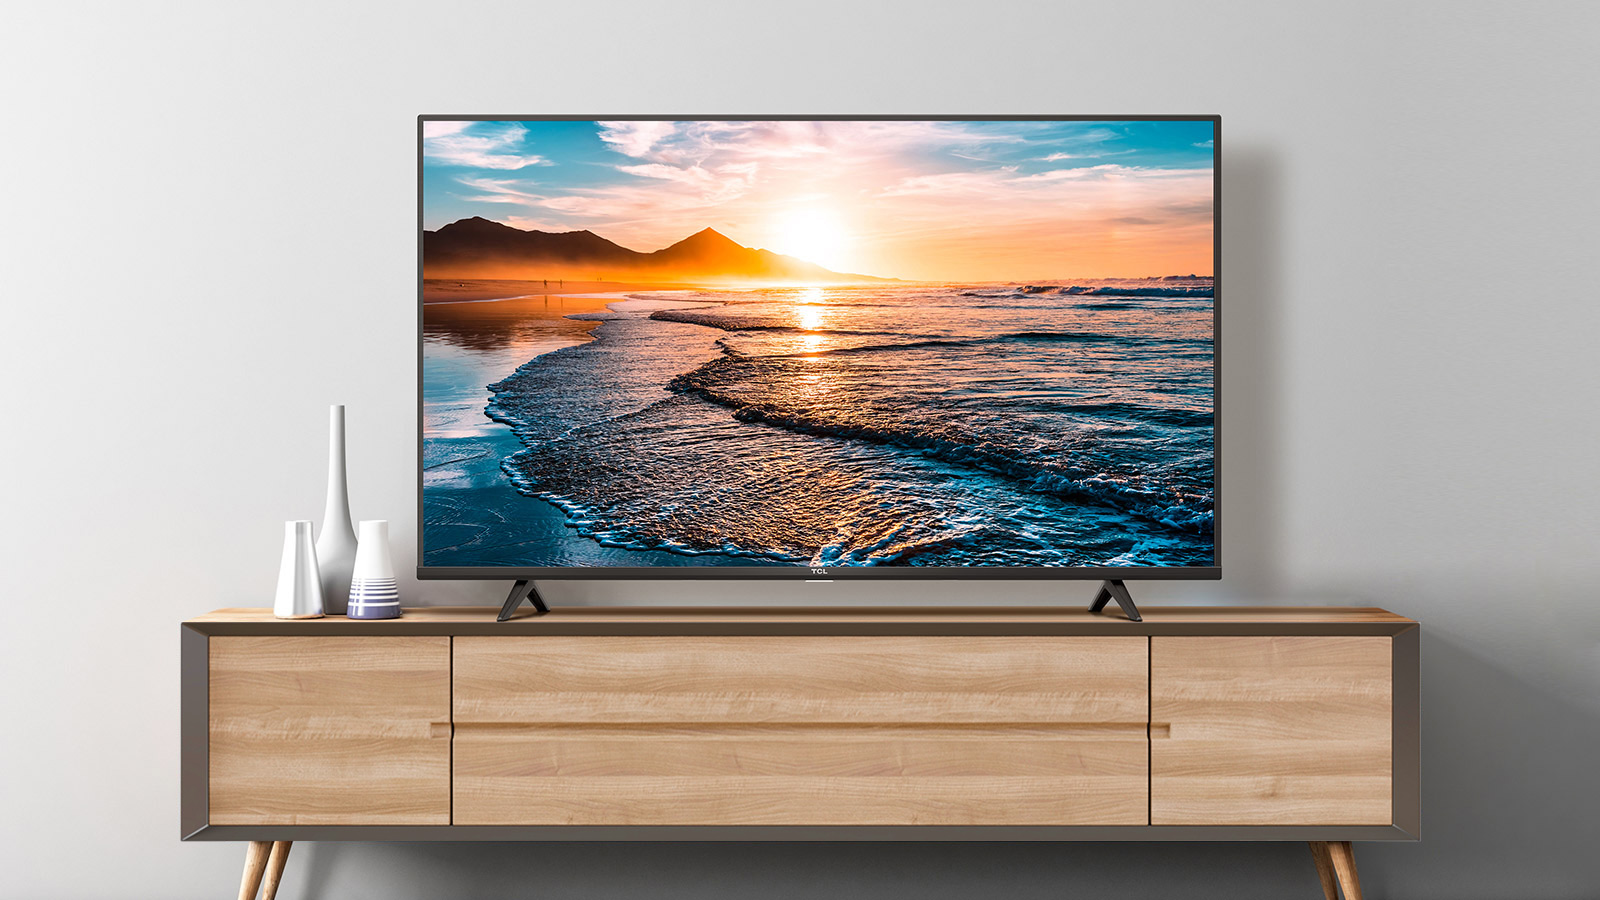 南宫ng·28 P615 Series 4K Android TV